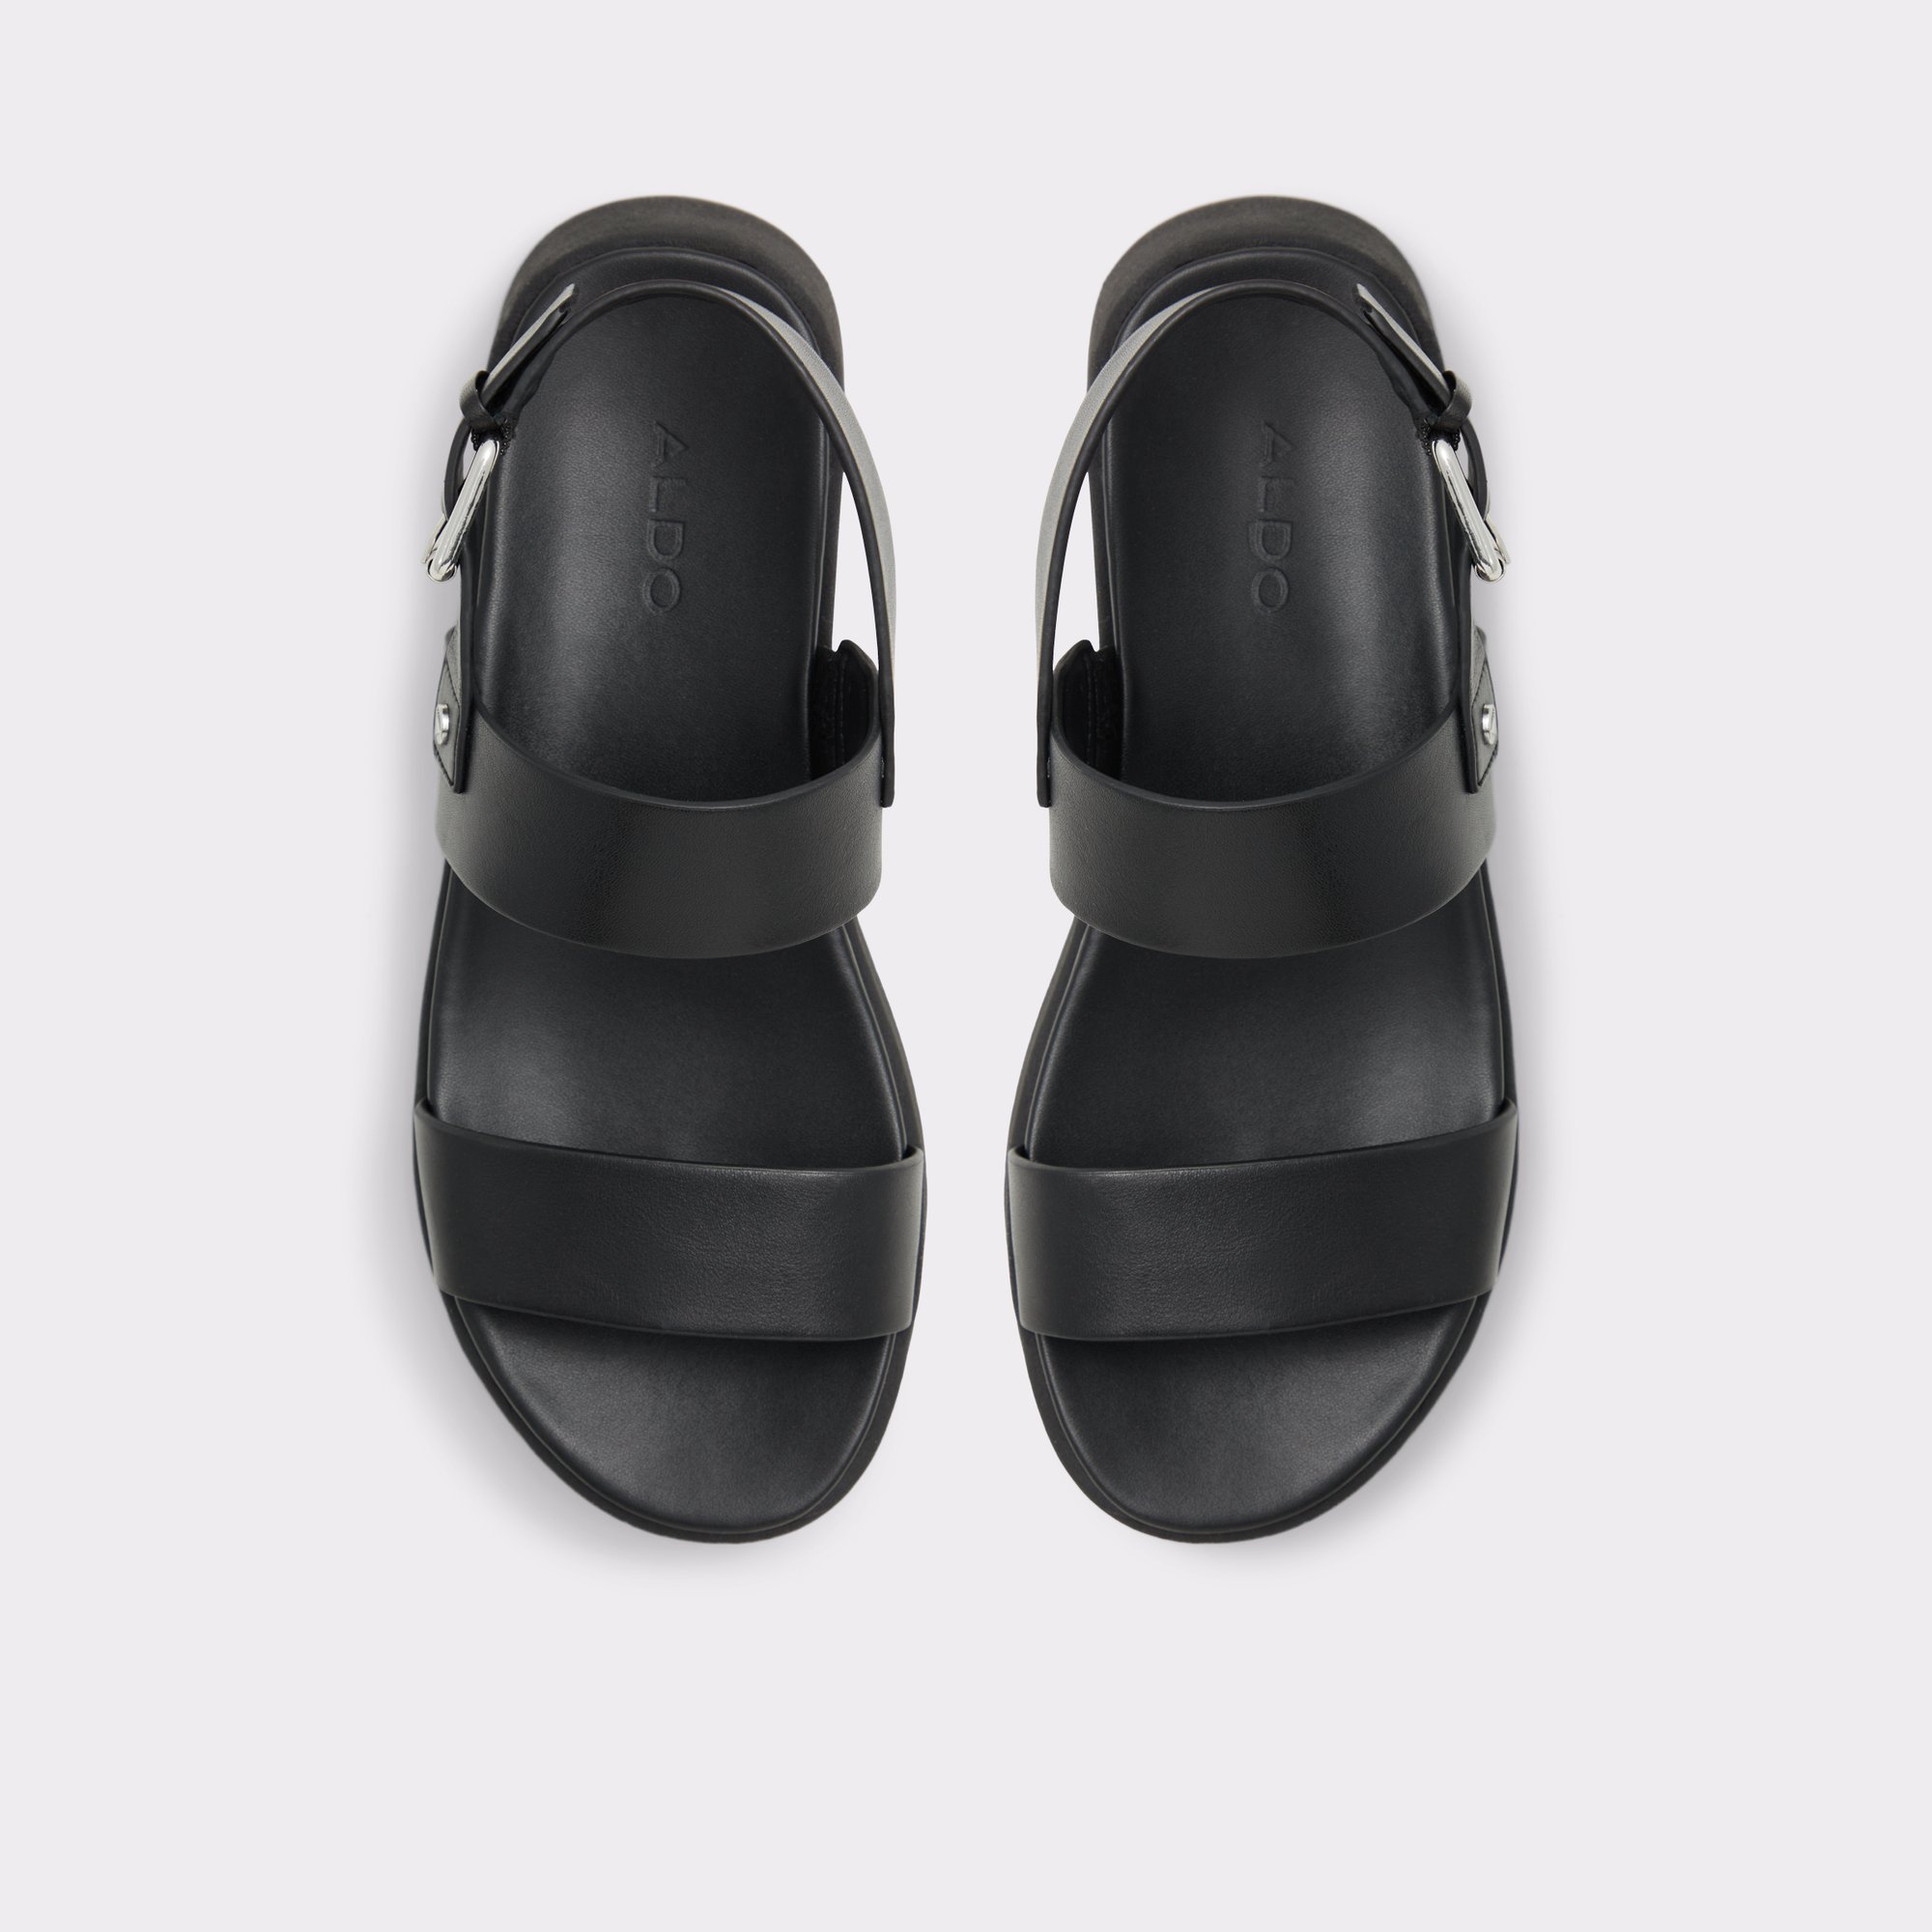 Silyia Black Women's Flat Sandals | ALDO Canada